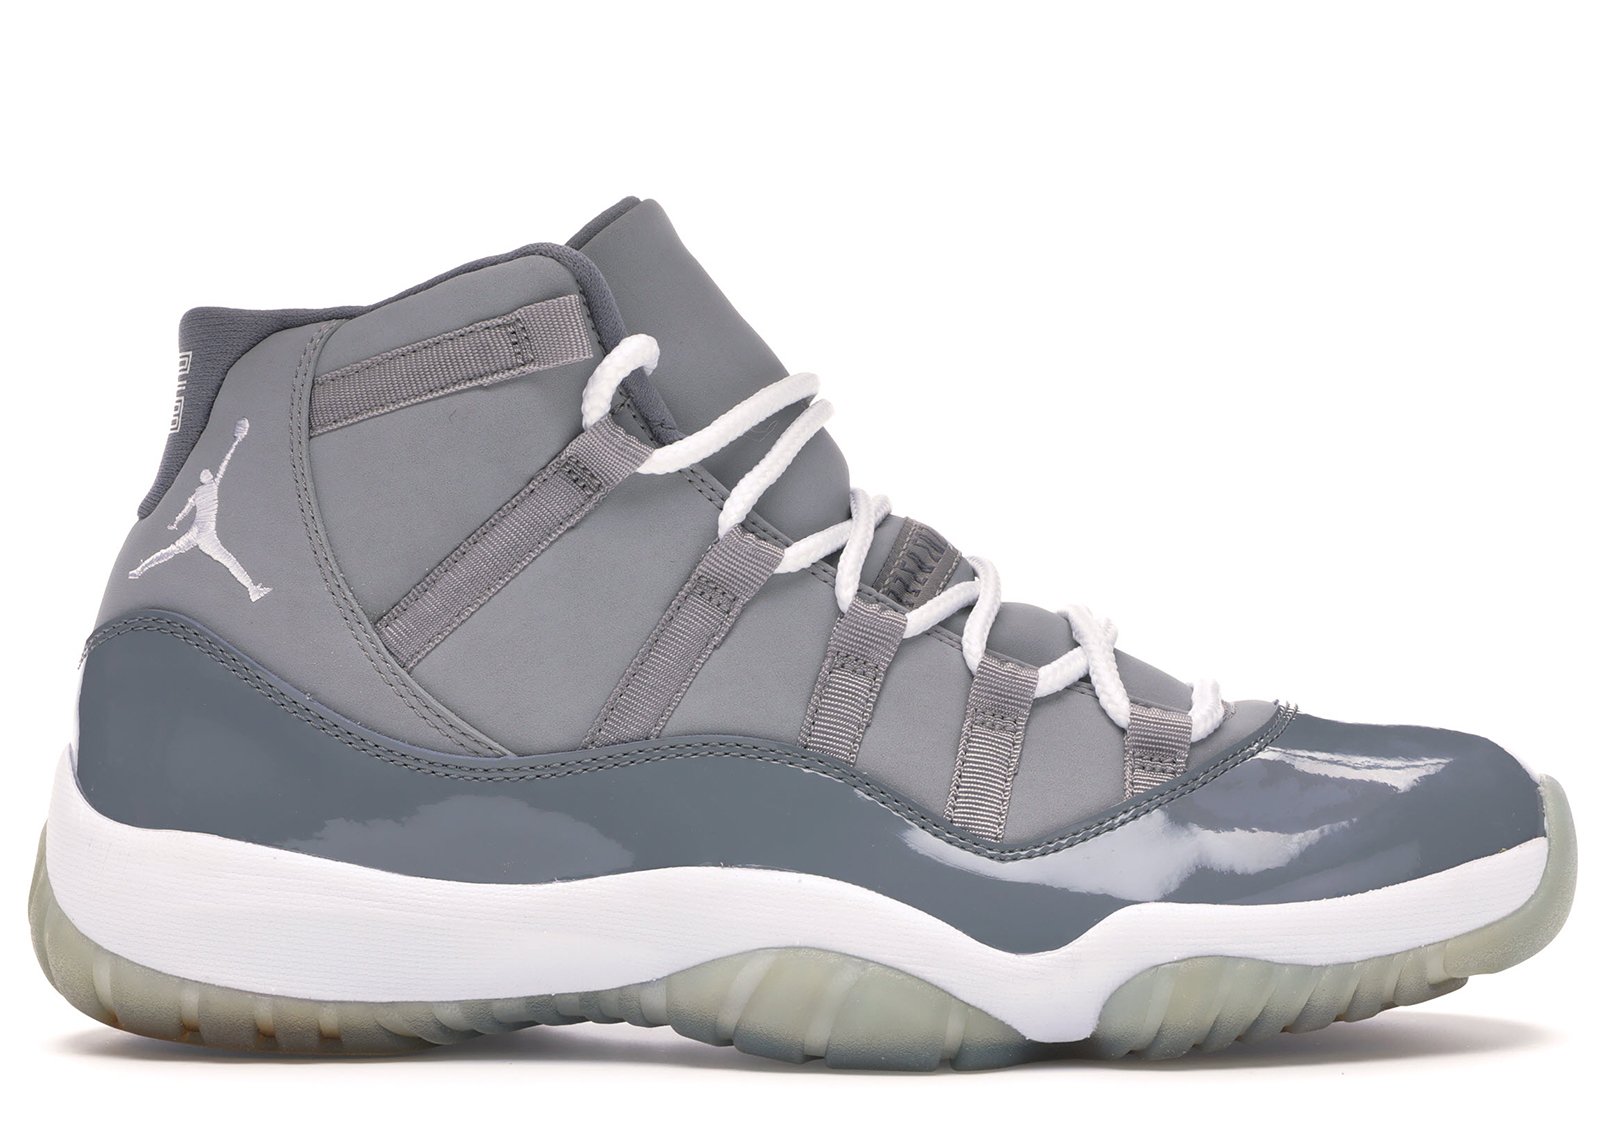 Jordan 11 Retro Cool Grey (2010) sneakers